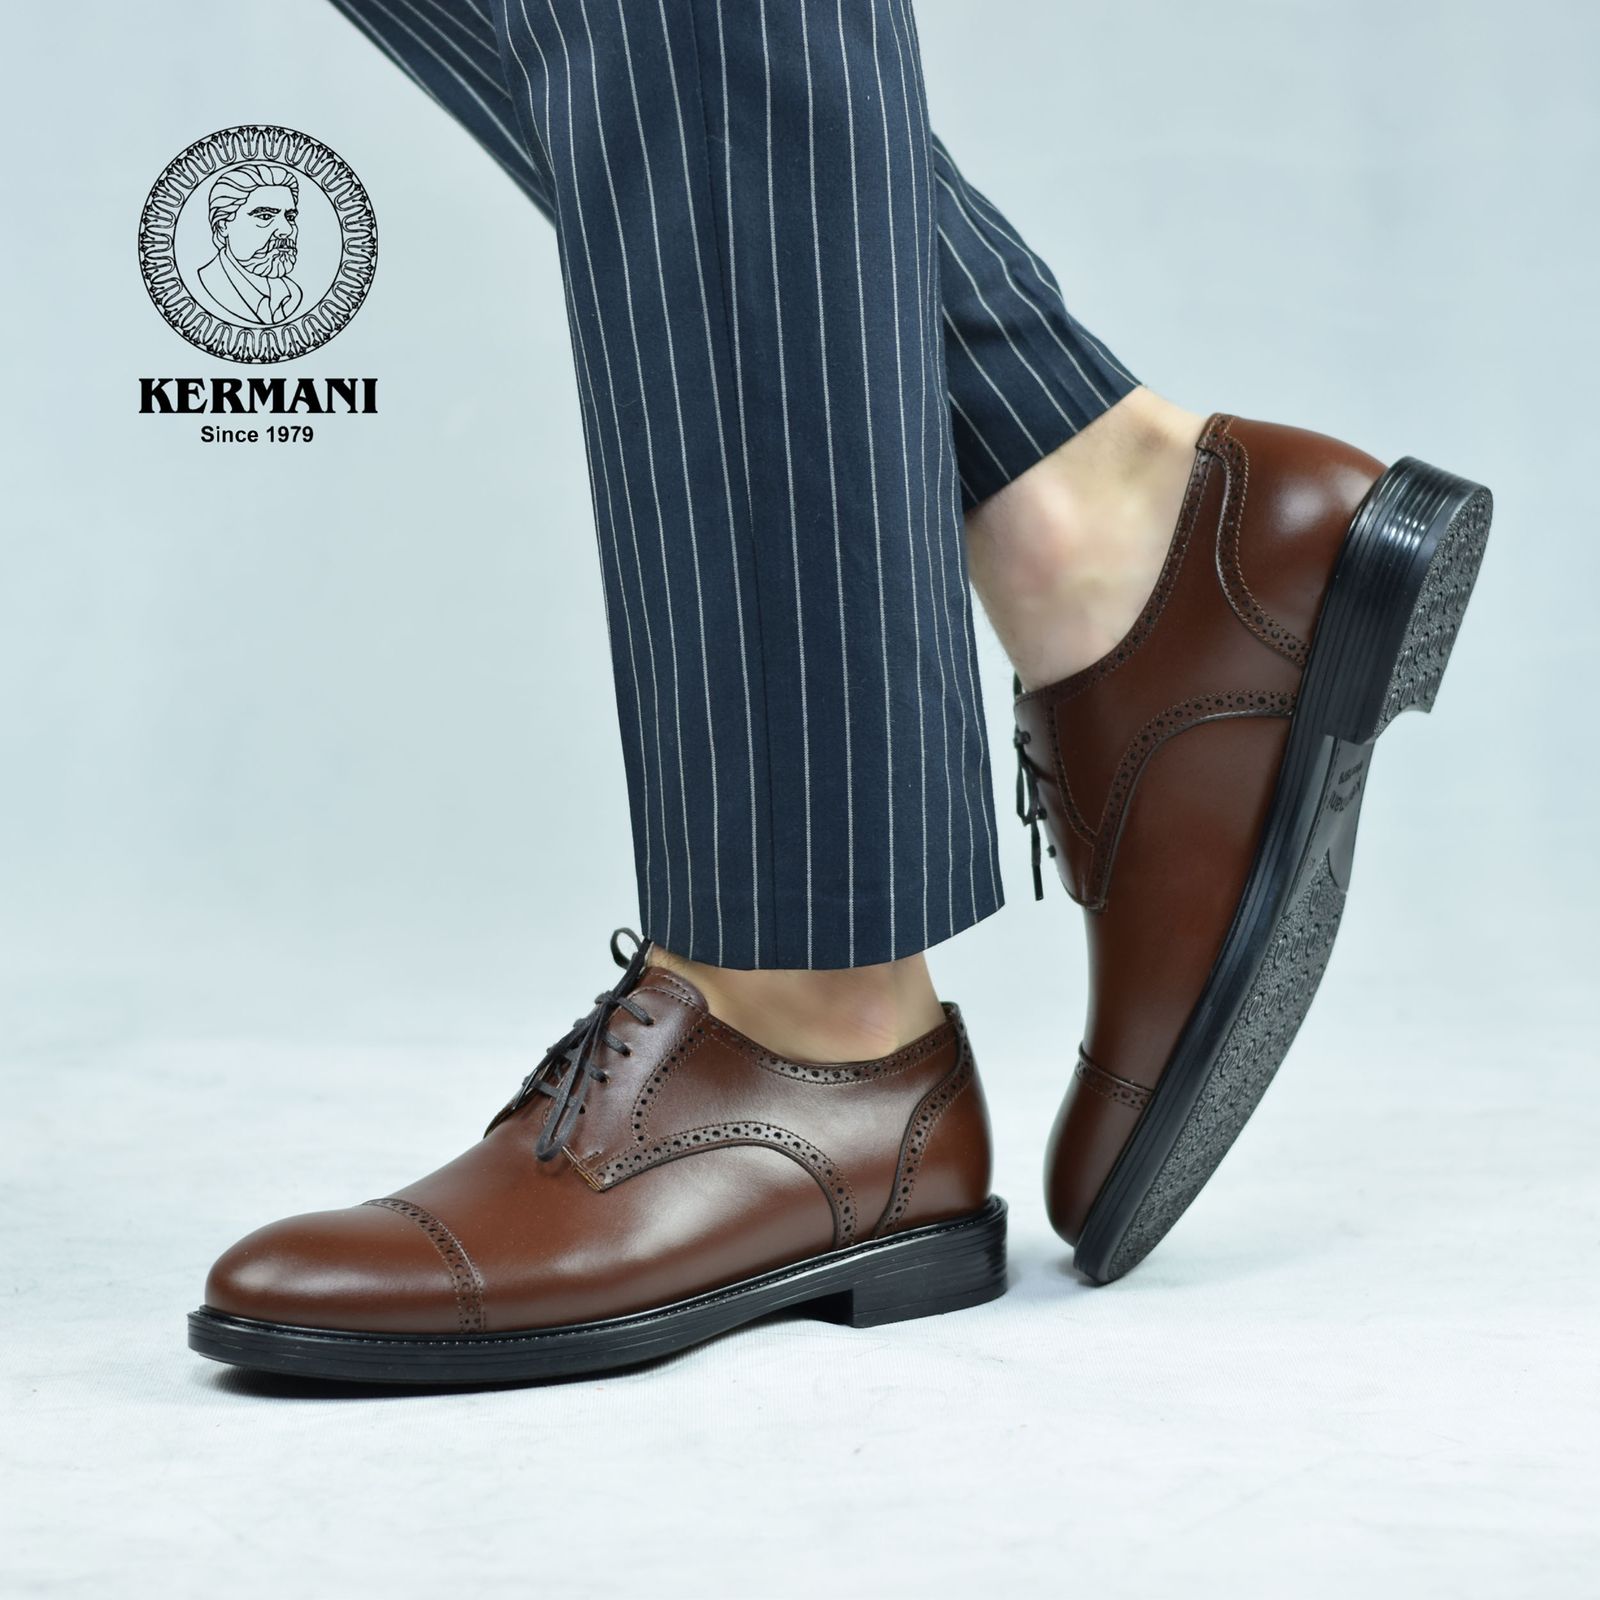 کفش مردانه کرمانی مدل چرم دستدوز طبیعی بِرِت کد 1062 رنگ قهوه ای -  - 3